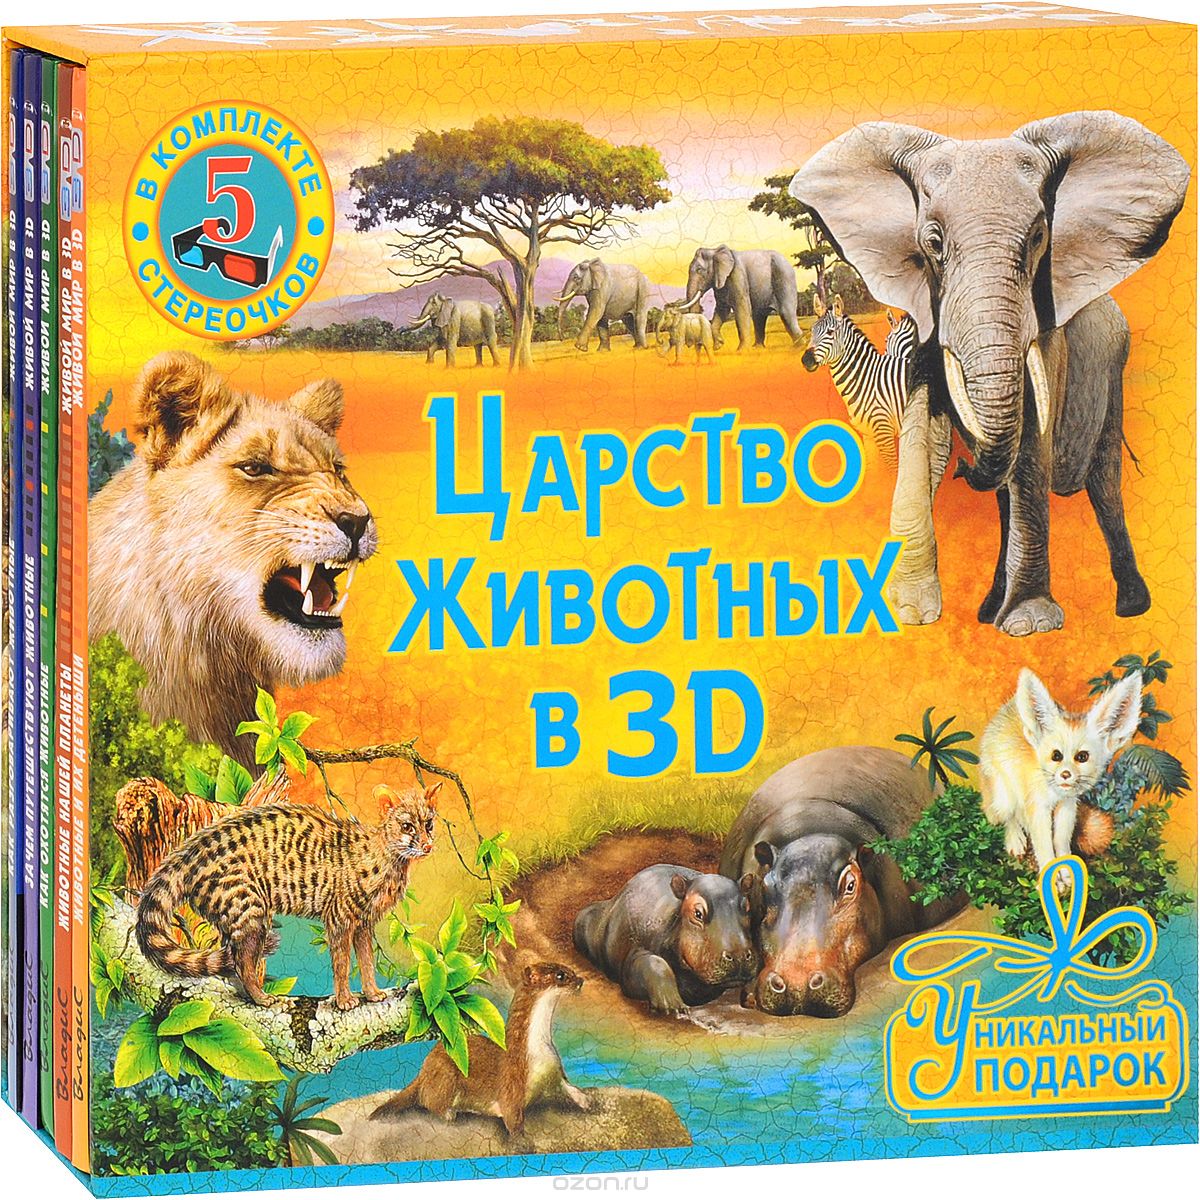 Царство животных в 3D (Комплект из 5 книг + 5 пар стереоочков)